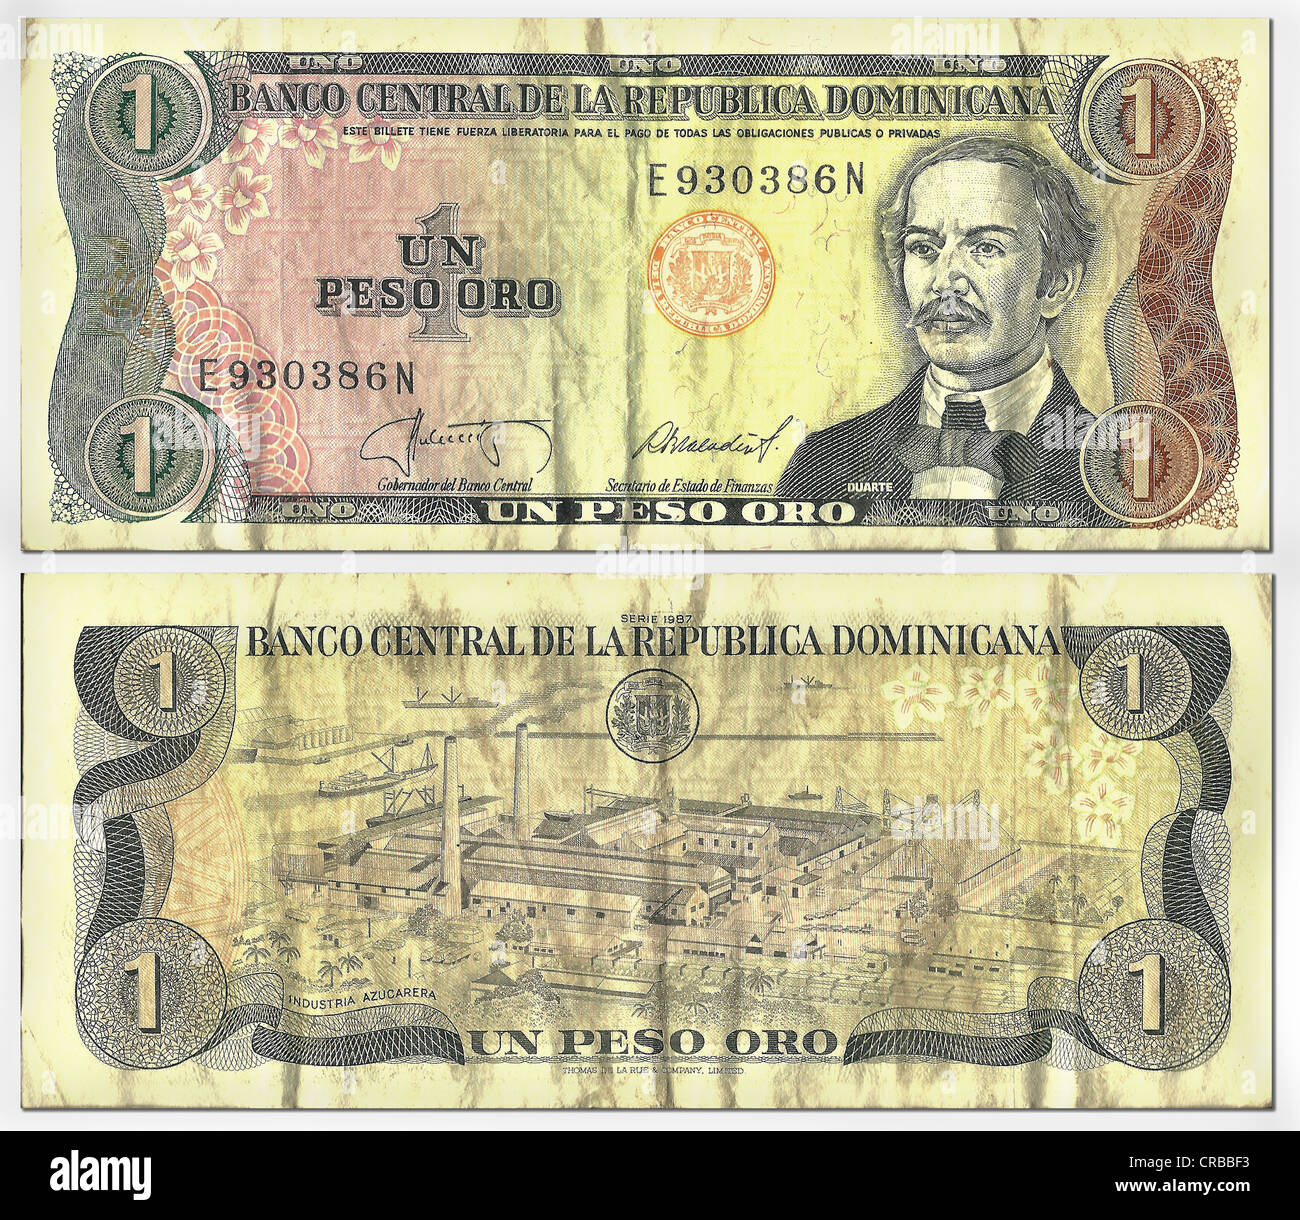 Old banknote, front and rear, 1 peso oro, Dominican Republic, Banco Central Republica Dominicana, around 1987 Stock Photo